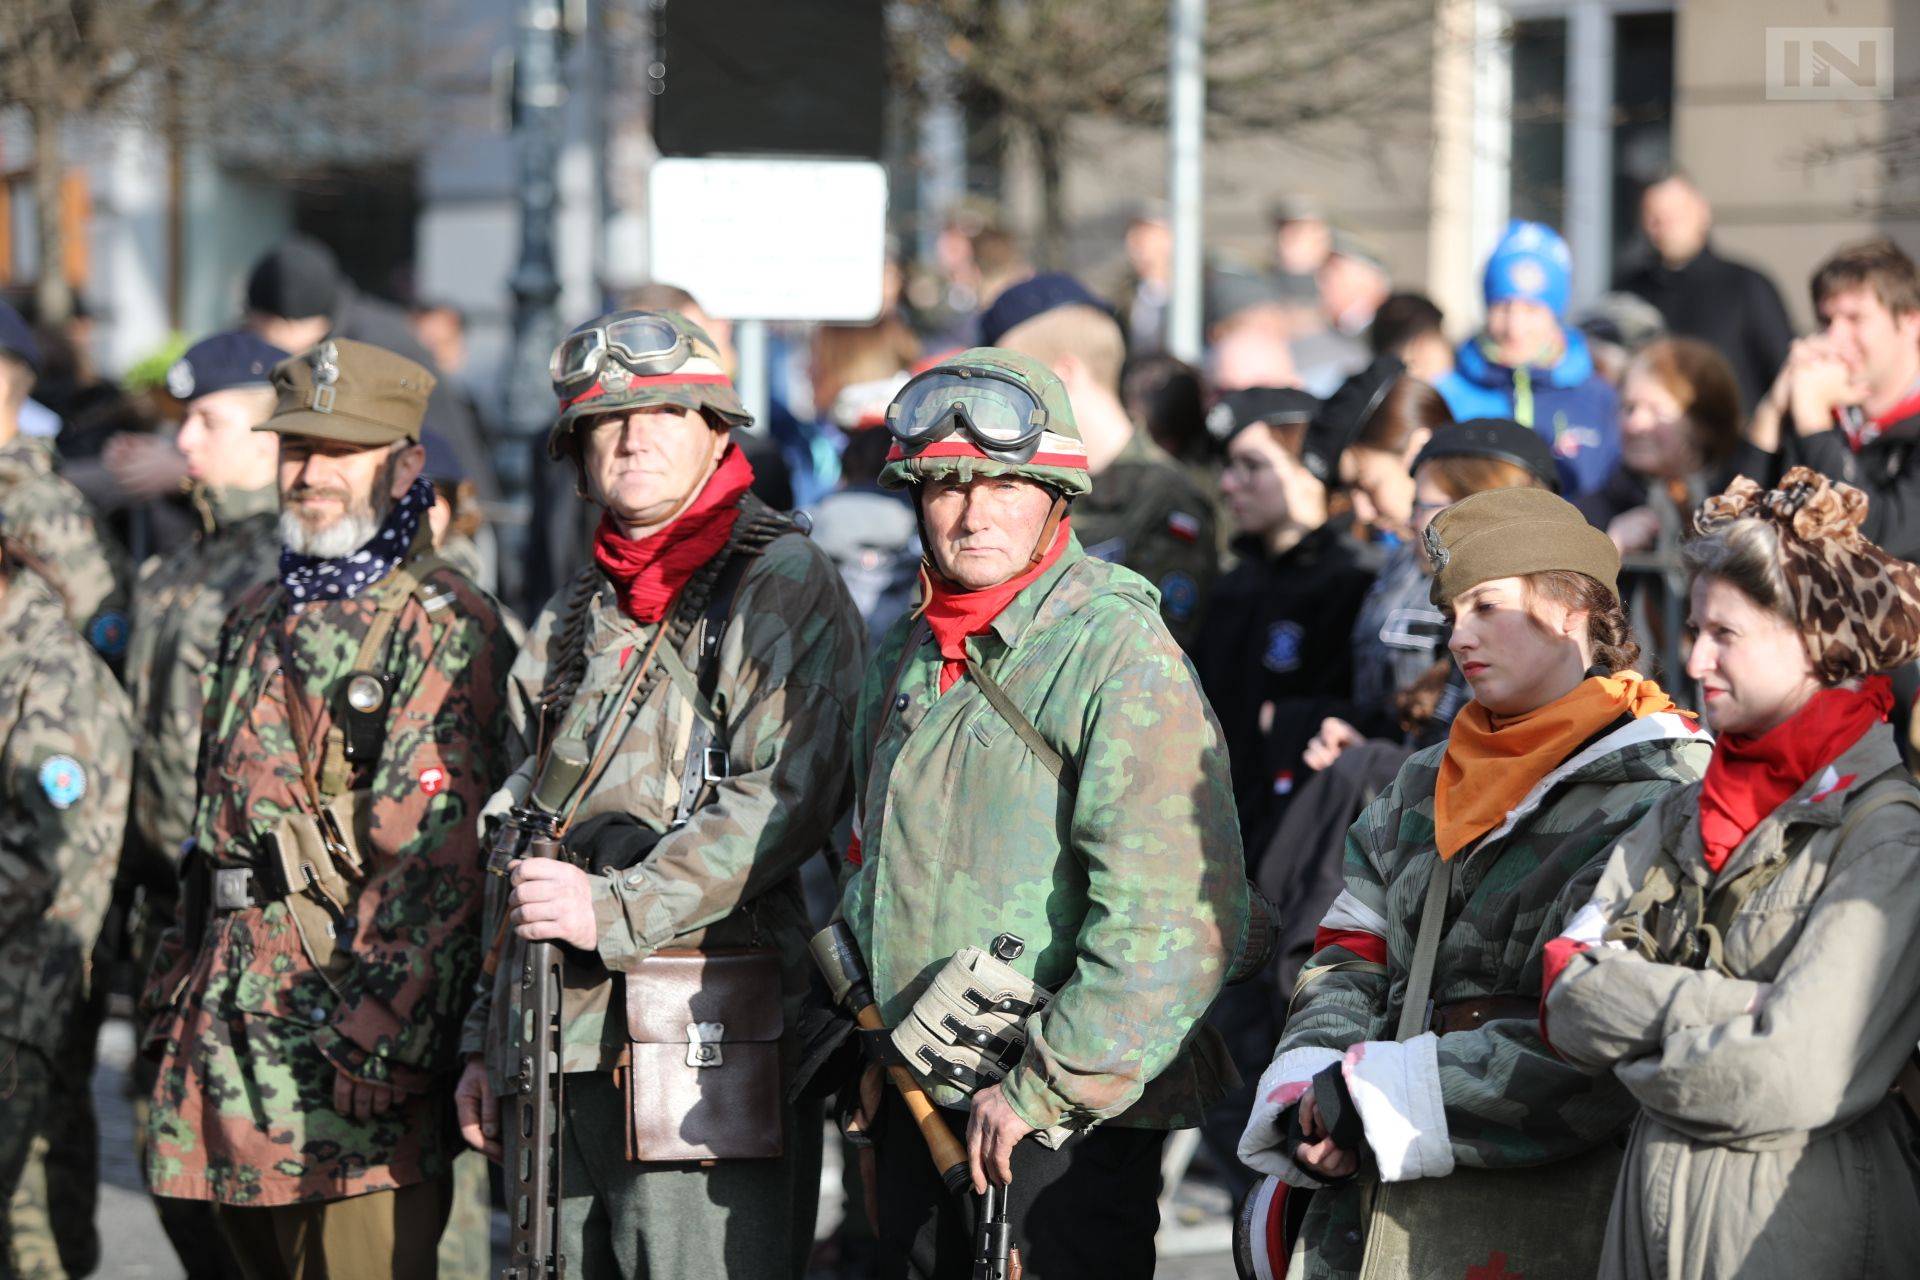 W Krakowie wprowadzono czasowy zakaz noszenia broni